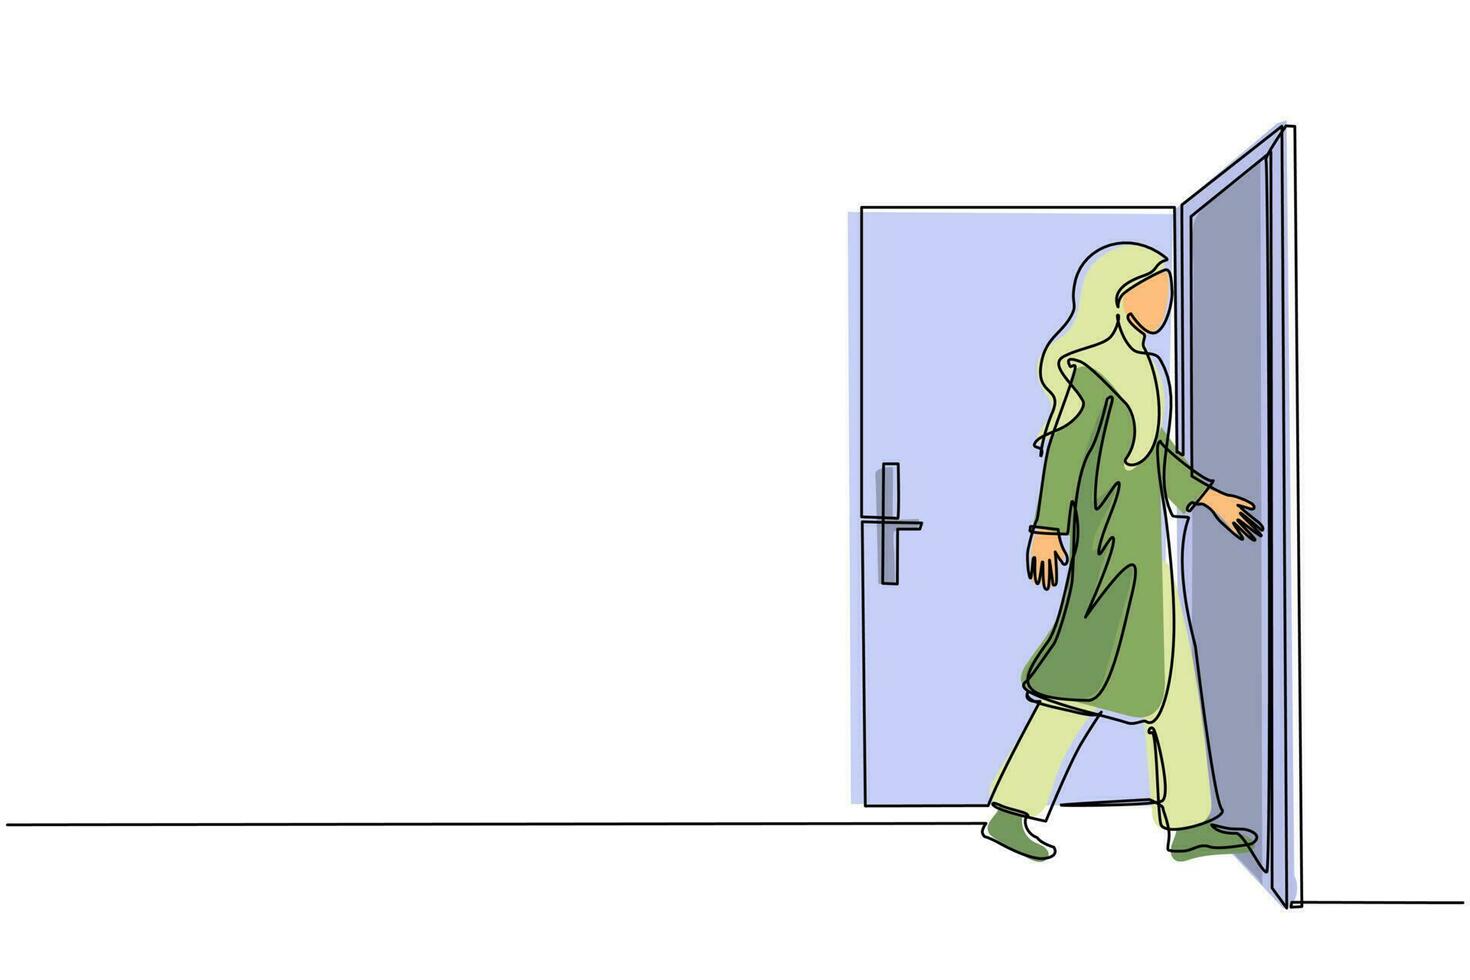 una mujer de negocios árabe de dibujo continuo entra en la habitación por la puerta. mujer caminando hacia la puerta abierta. comenzando un nuevo día en la oficina. concepto de negocio. ilustración de vector de diseño de dibujo de una sola línea